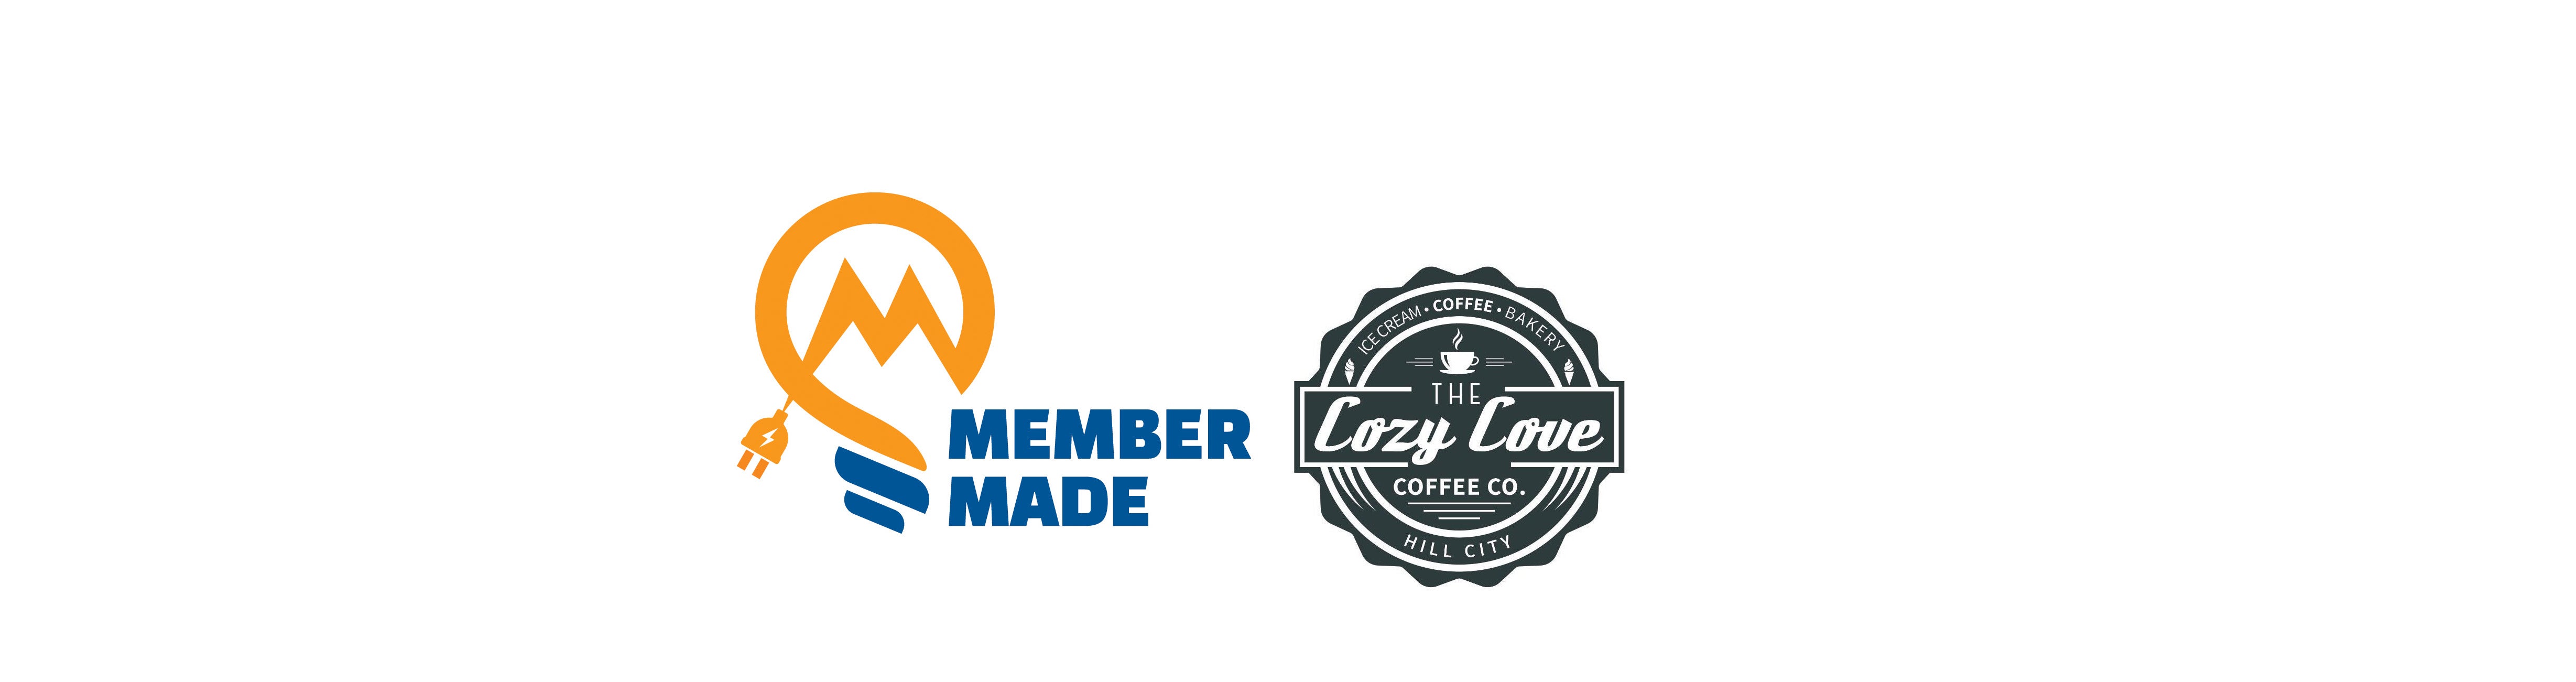 Cozy Cove Member Made logos